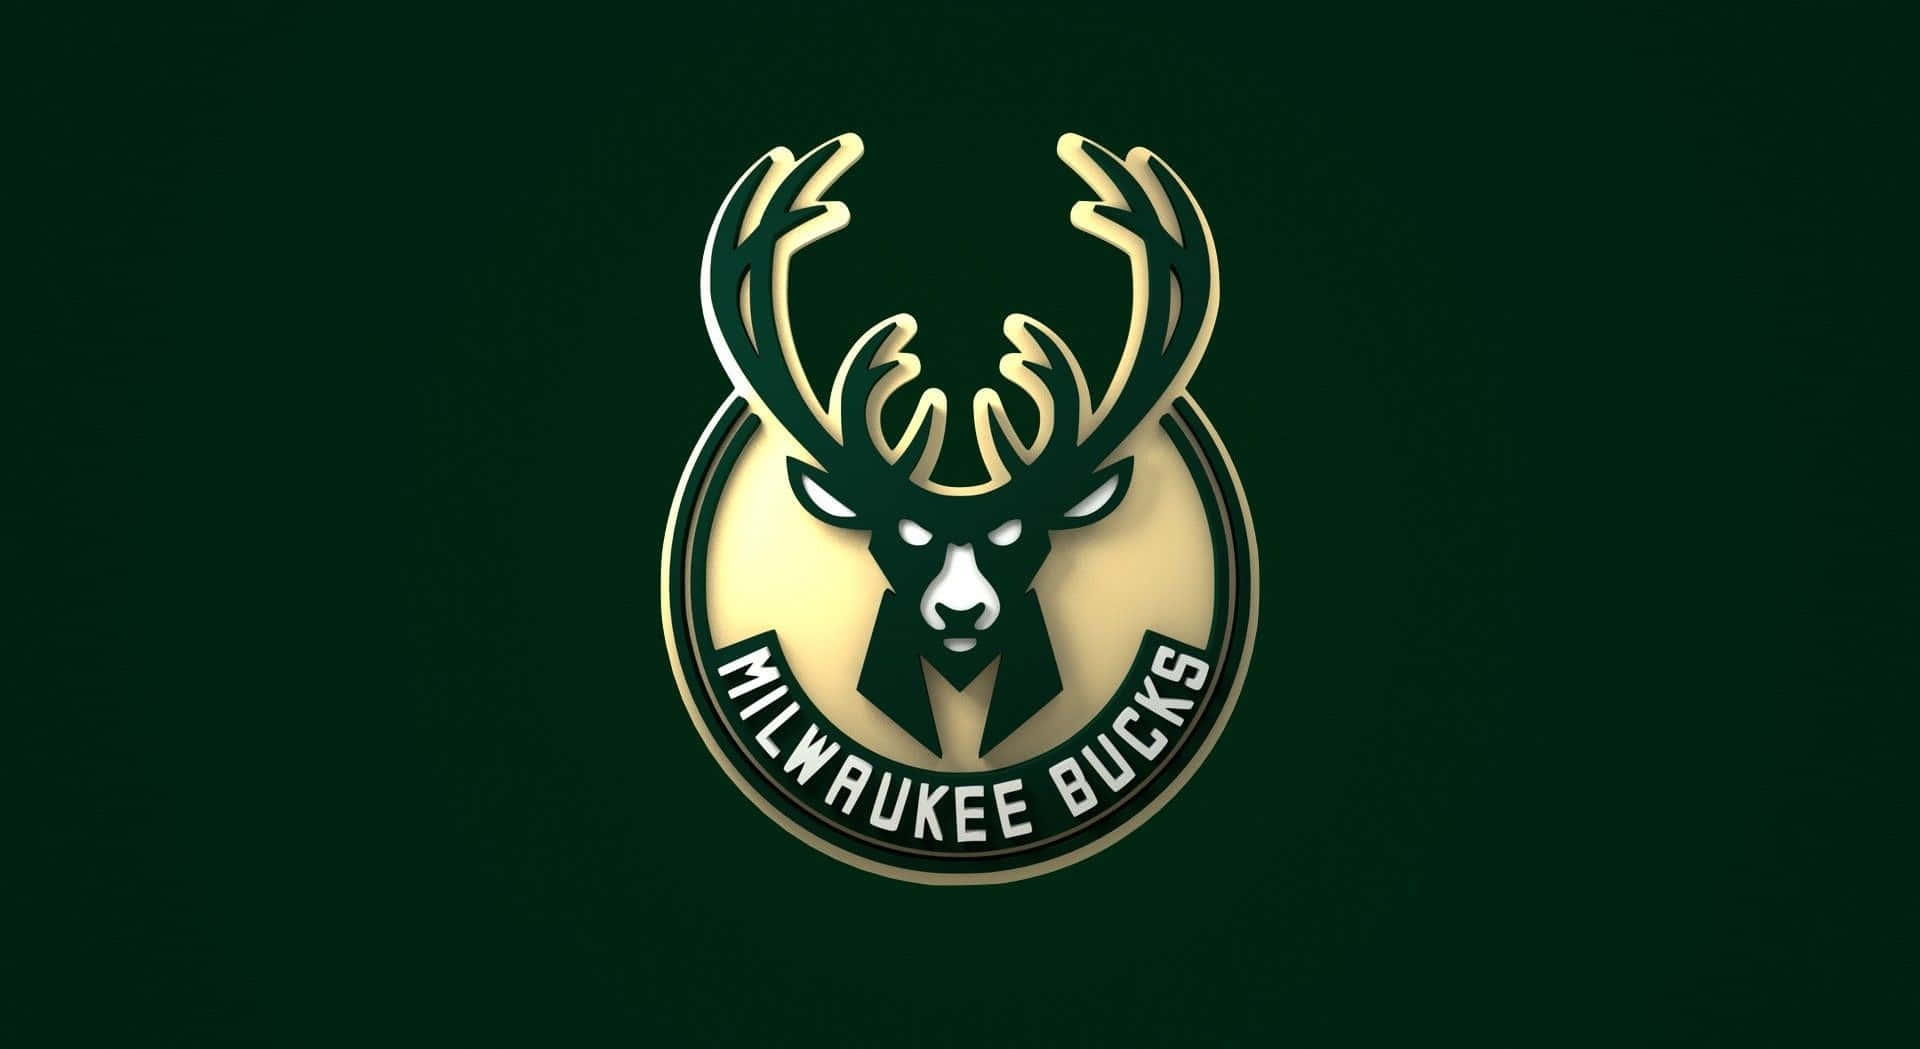 Milwaukeebucks-logotypen Representerar Ett Ikoniskt Idrottslag I Nba. Wallpaper